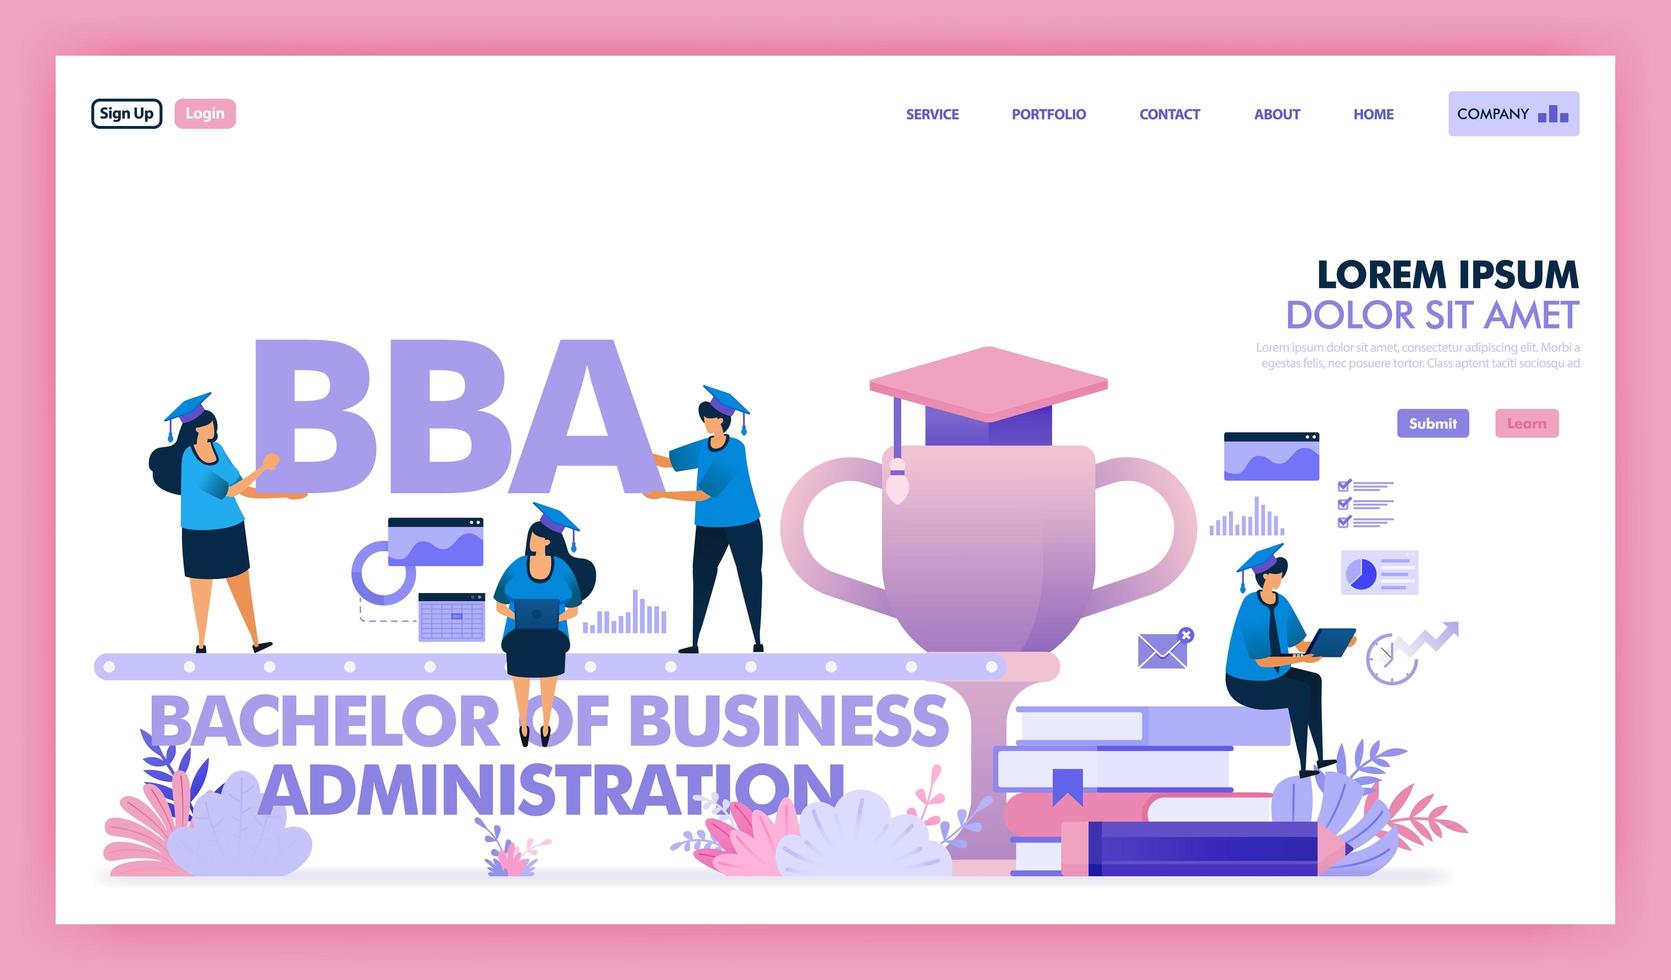 bba of bachelor bedrijfskunde is een universitaire opleiding voor bedrijfskunde en economie, mensen leren om een diploma master bedrijfskunde of mba te behalen. vlakke afbeelding vector ontwerp.